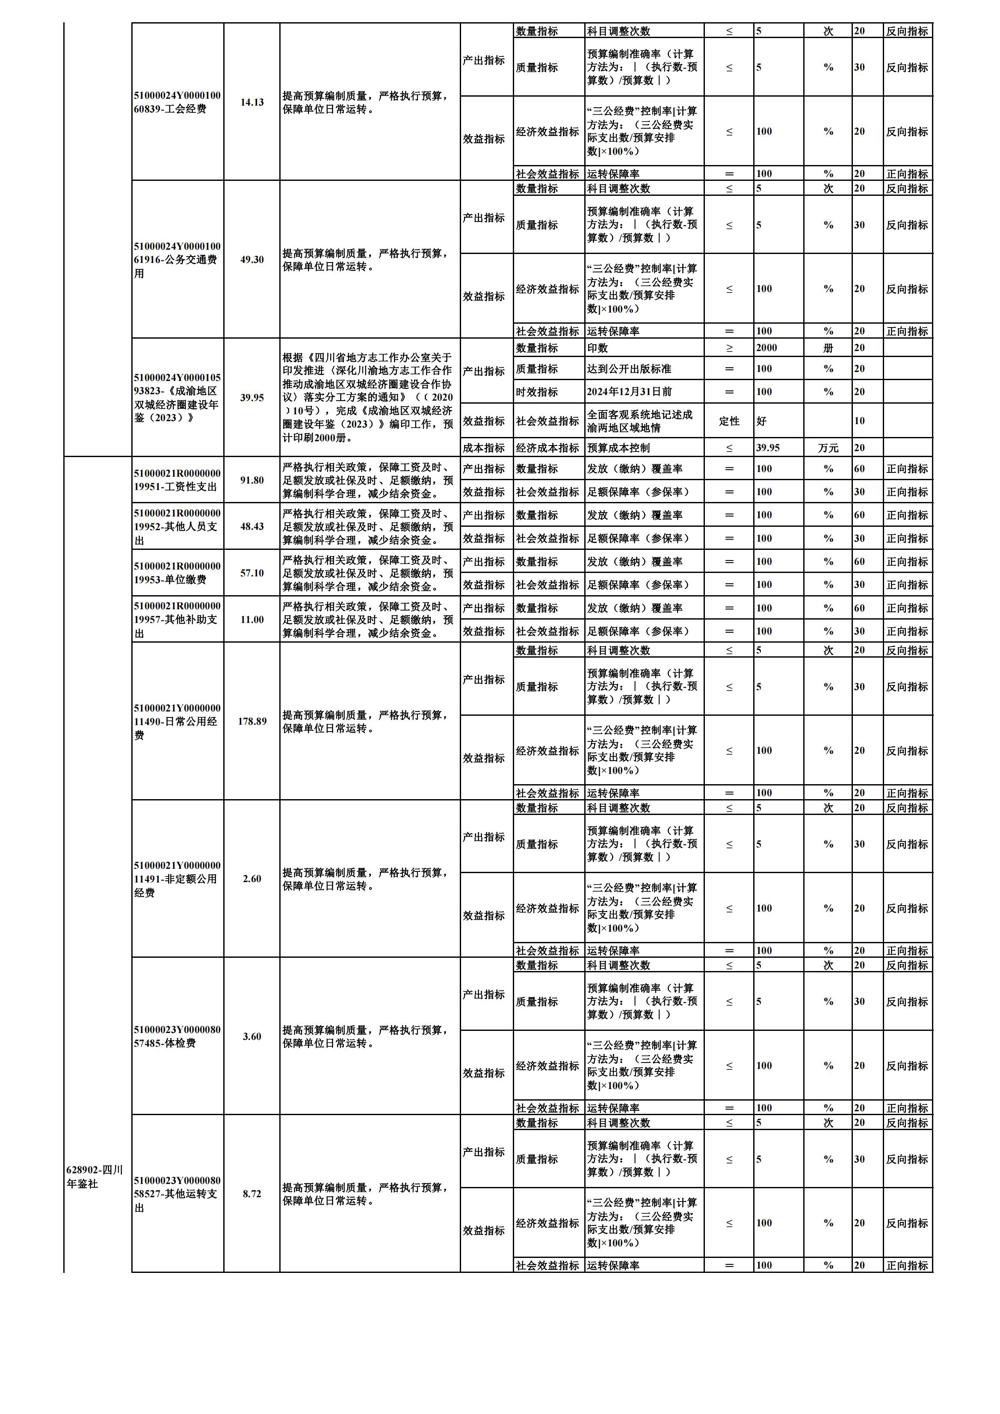 0226-部门项目支出绩效目标表_02